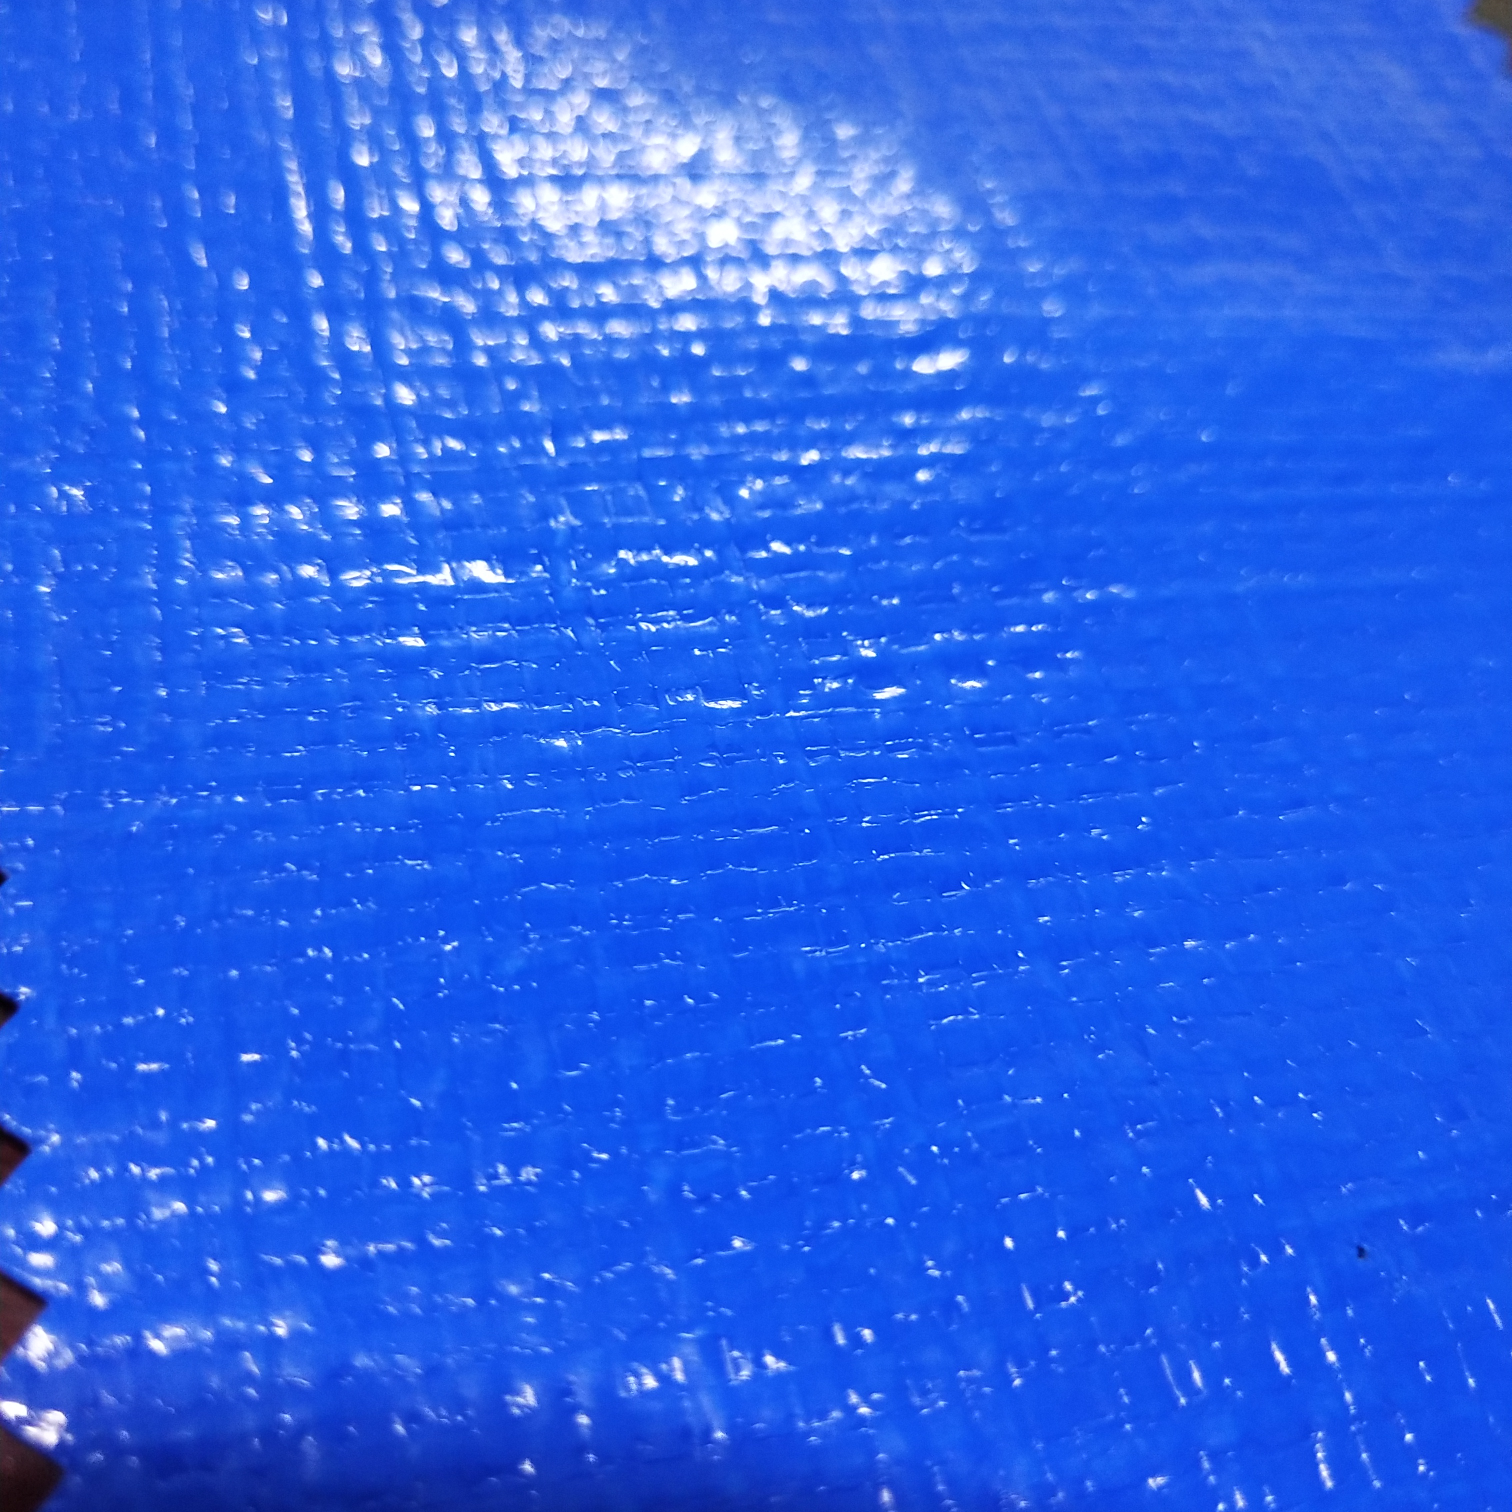 双面淋膜150克双蓝PE防水布  塑料编织布  适用于花房篷布 汽车篷布 帐篷底布 各种手提袋  收纳箱专用面料